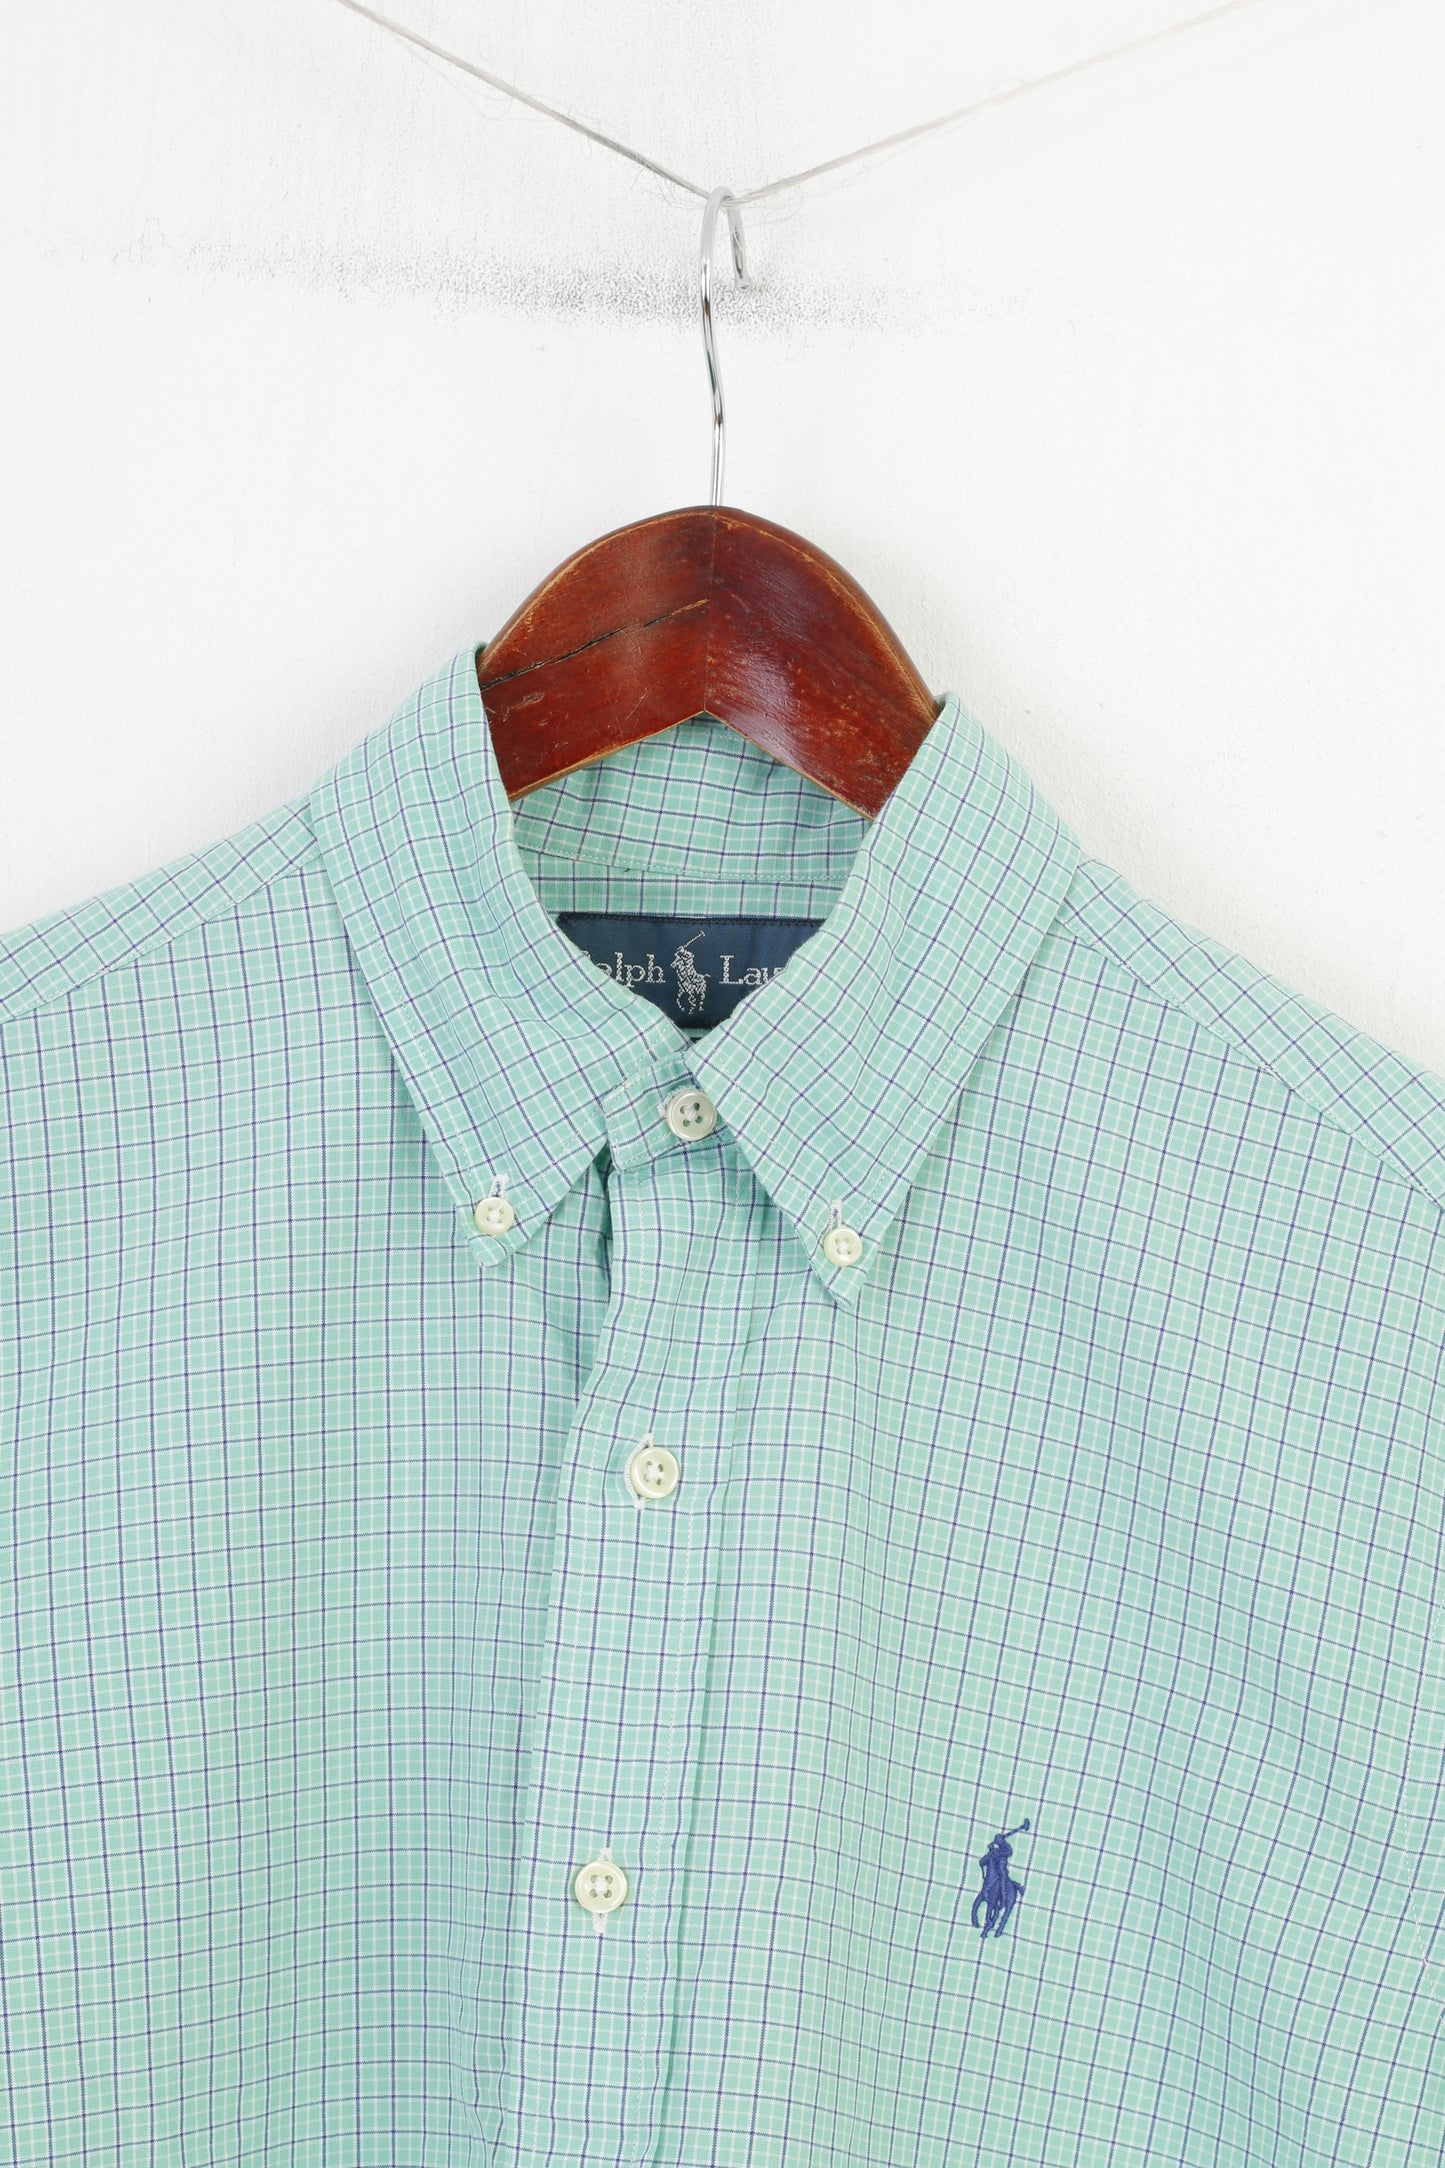 Ralph Lauren Men S Casual Shirt Green Check Cotton Short Sleeve Classic Fit Top